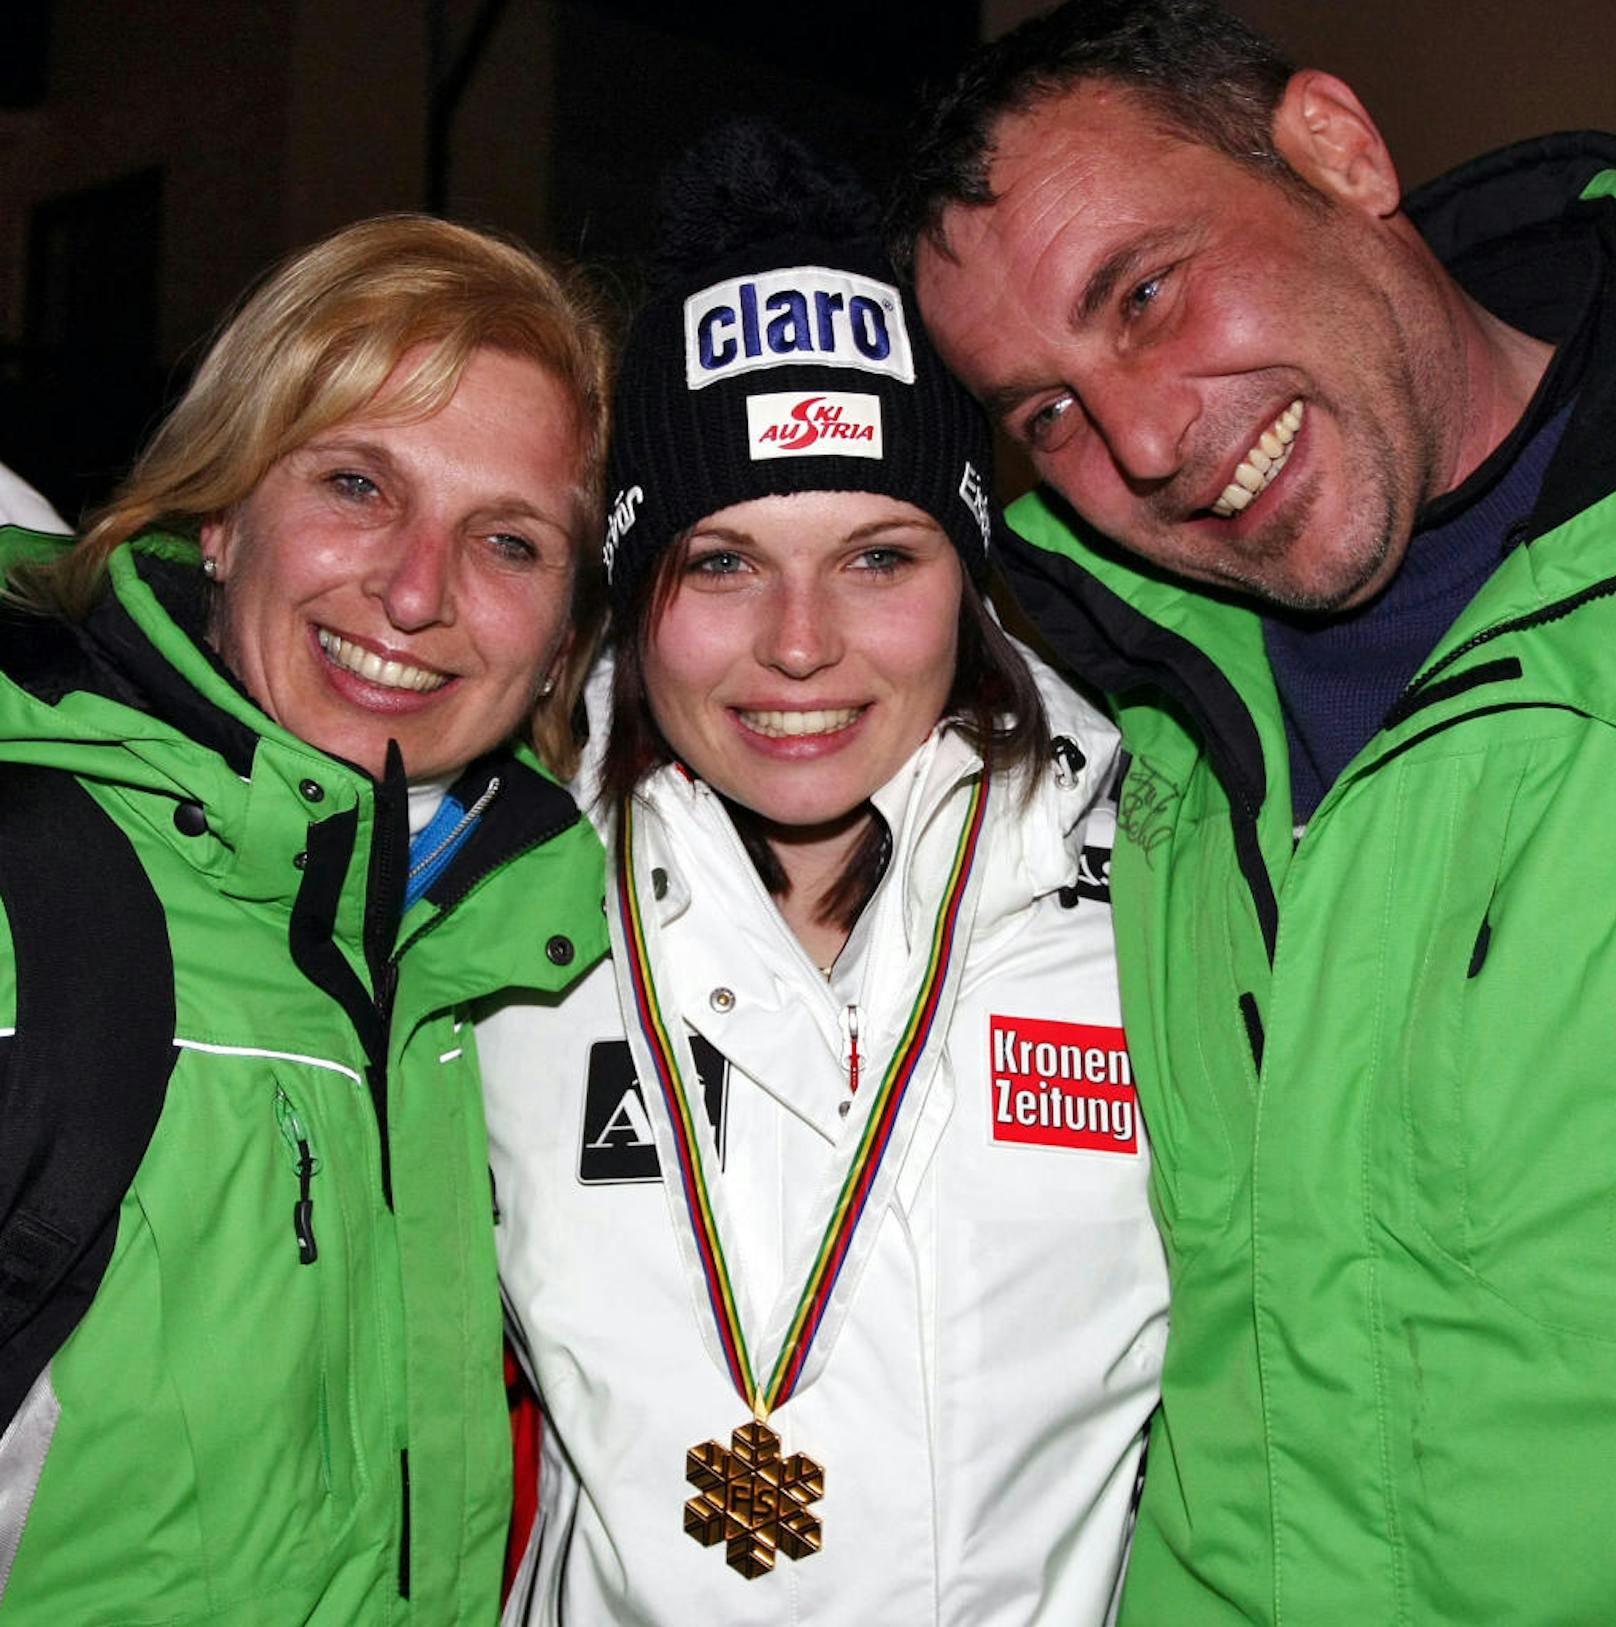 <b>Platz 11: Anna Veith (3 x Gold, 2 x Silber, 1 x Bronze)</b>
Sämtliche WM-Medaillen fuhr Veith noch vor ihrer Hochzeit, also unter dem Namen Fenninger ein. In Garmisch eroberte sie 2011 Gold in der Super-Kombi und Team-Silber. Bei der Heim-WM 2013 in Schladming reichte es "nur" zu RTL-Bronze. Dafür wurde die WM 2015 in Vail/Beaver Creek  ein voller Erfolg: Gold im Super-G und im Riesentorlauf, Silber in der Abfahrt.